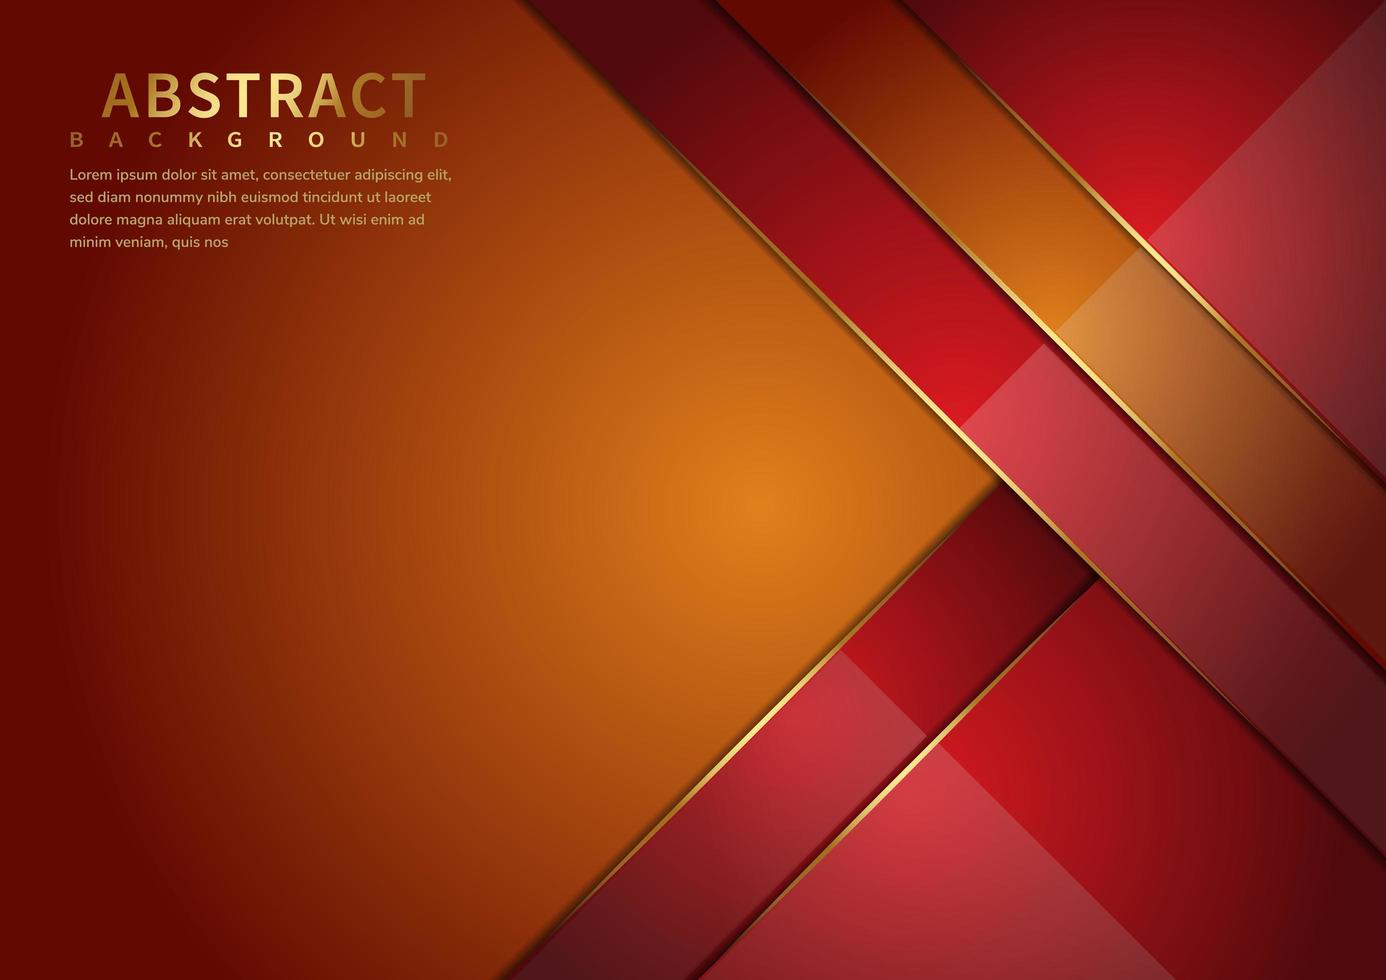 abstracte oranje en rode overlappende lagen achtergrond met kopie ruimte voor tekst. luxe stijl. vector